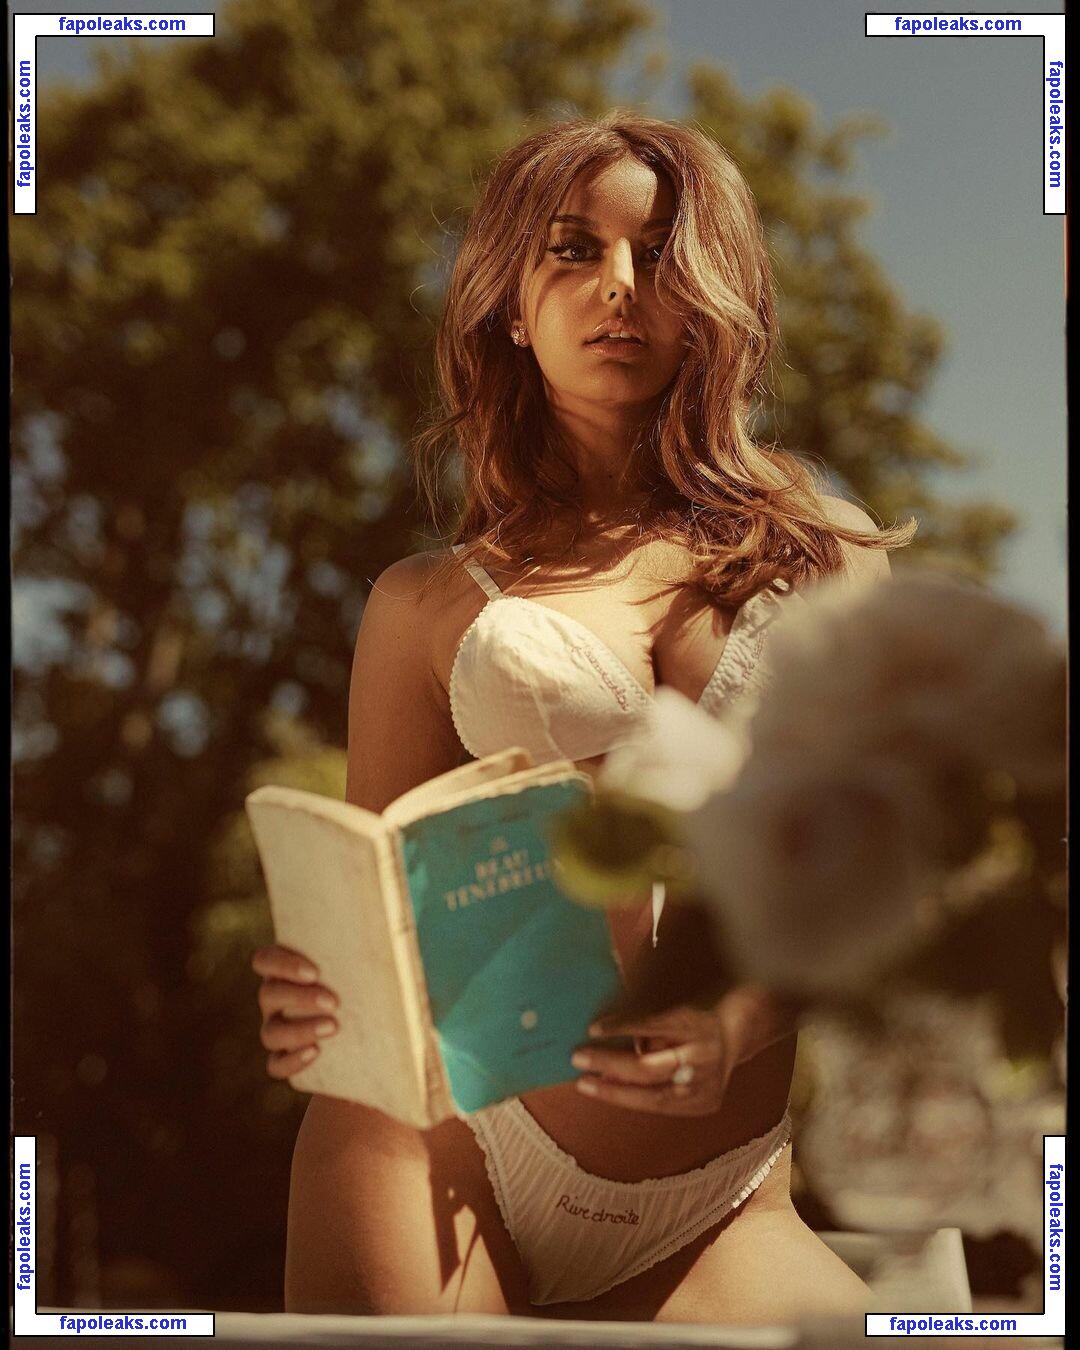 Zahia Dehar / zahiaofficiel nude photo #0458 from OnlyFans